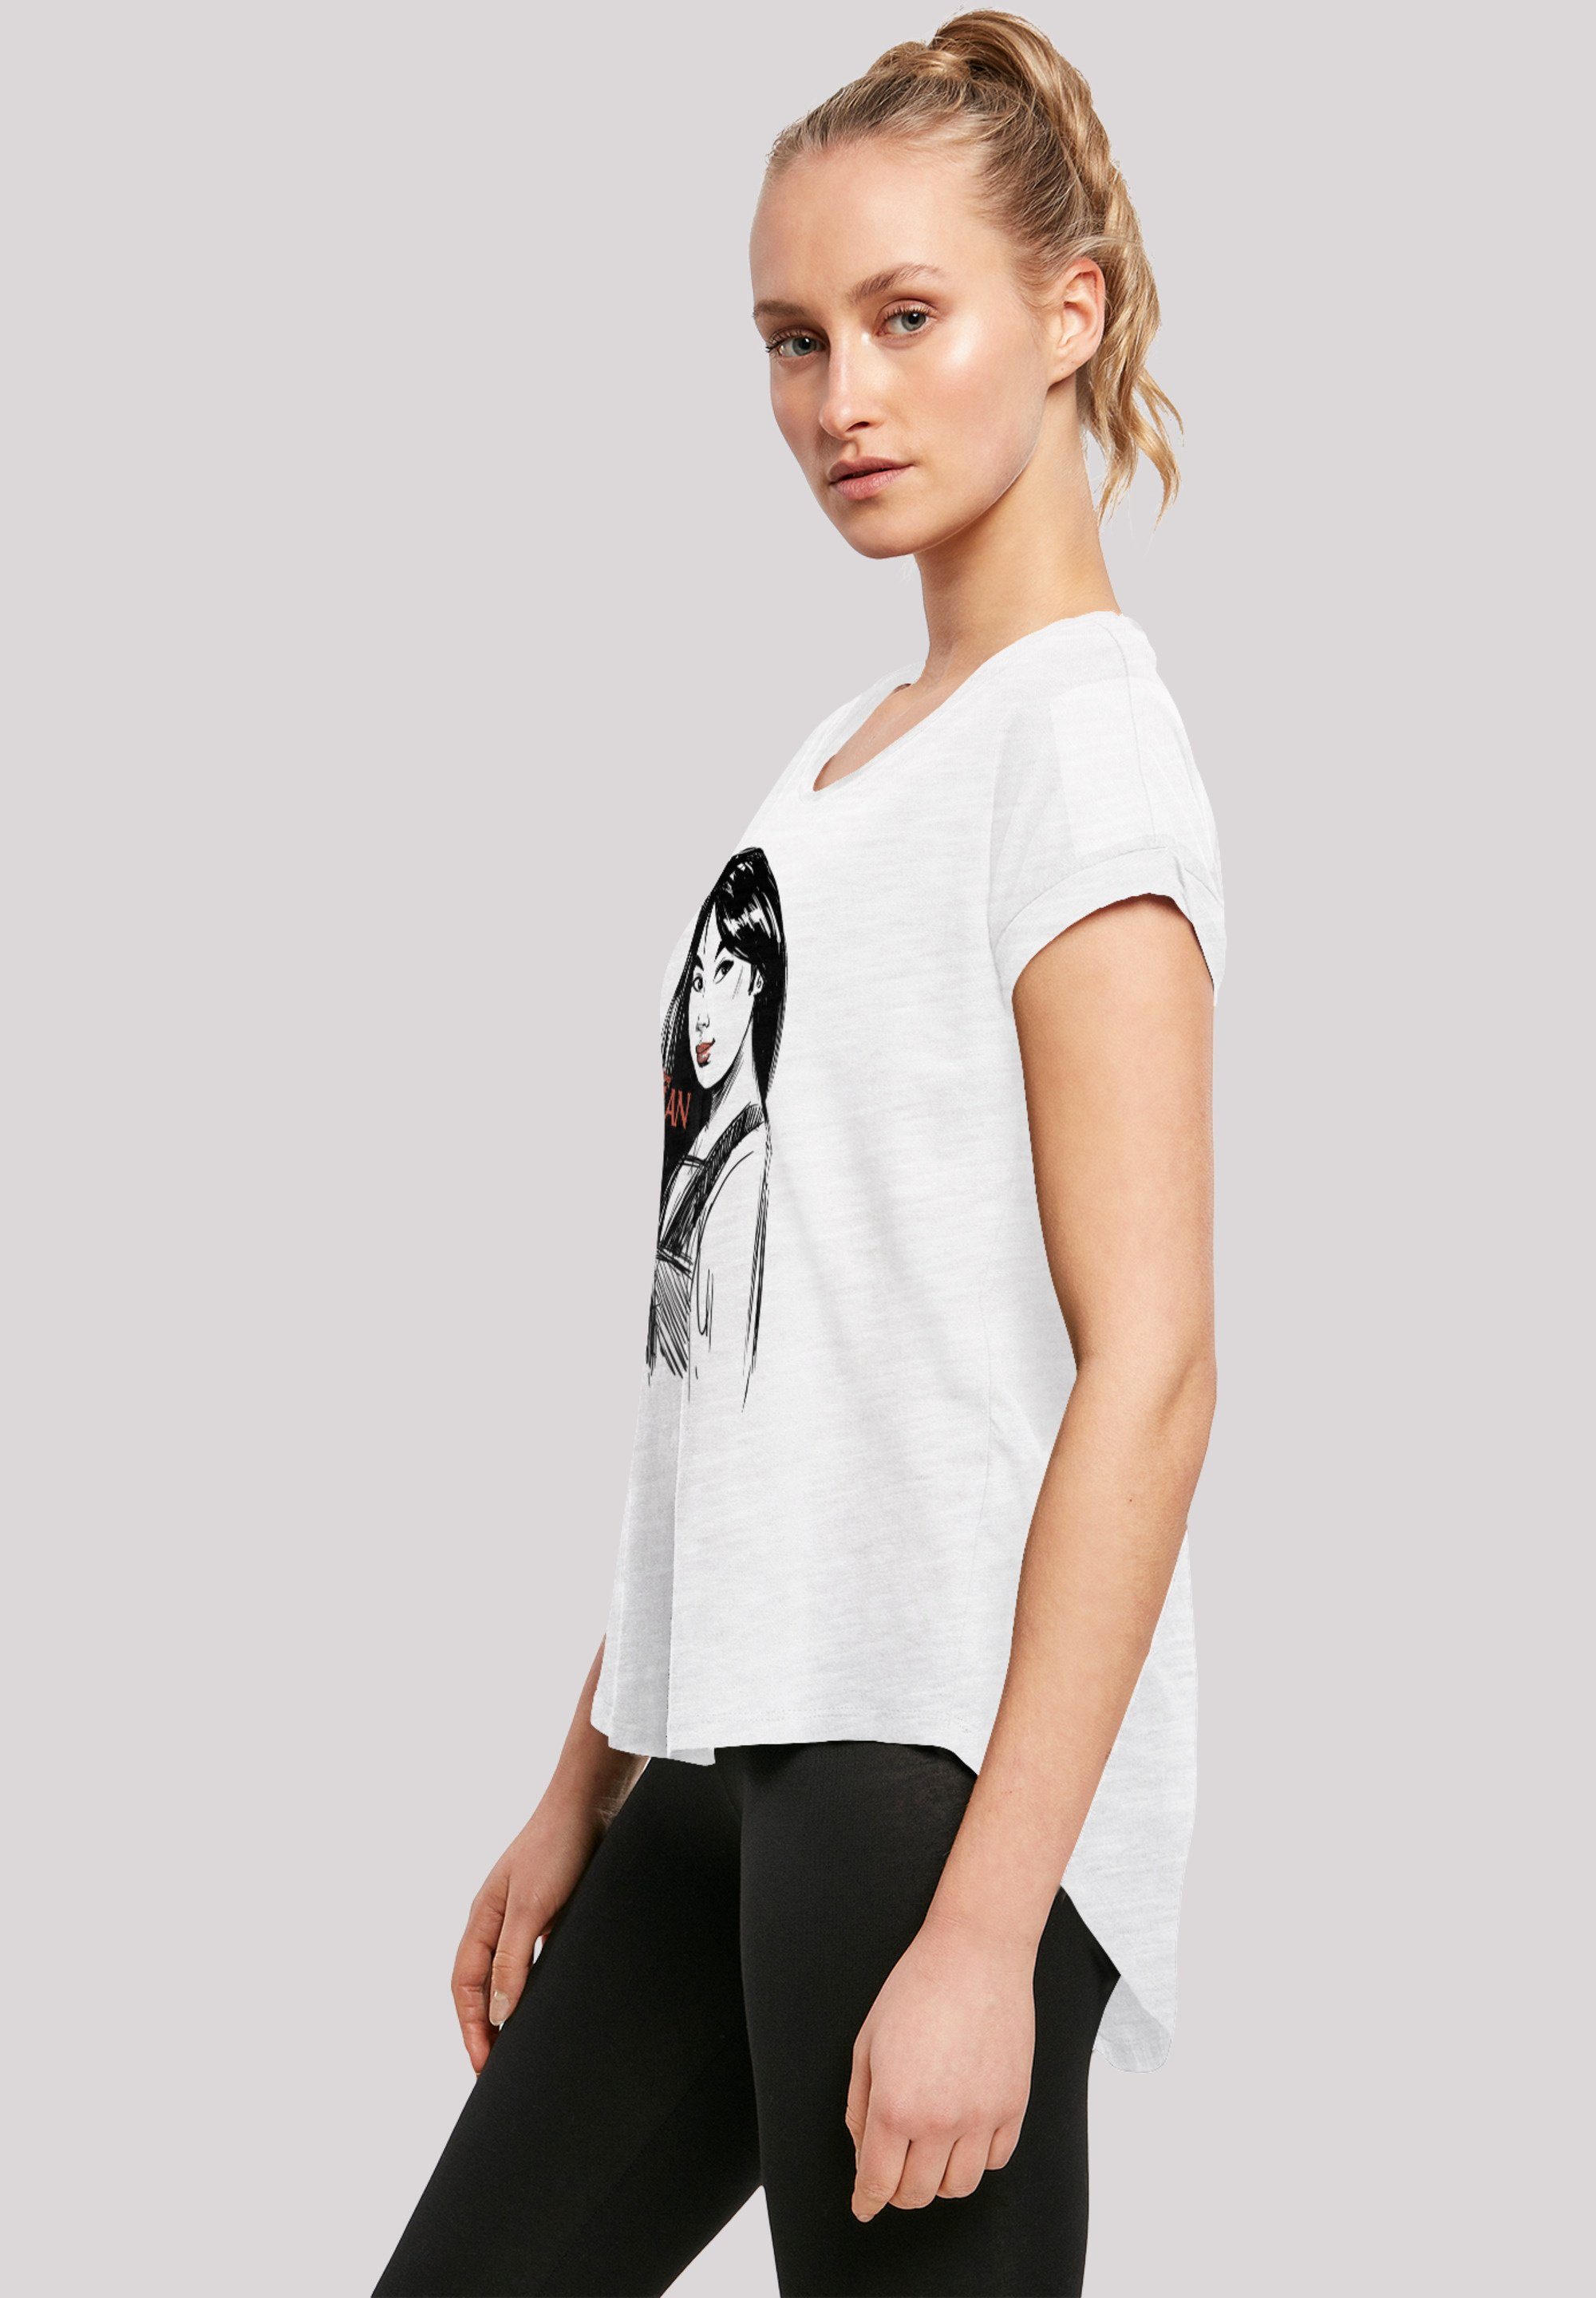 Merch,Lang,Longshirt,Bedruckt Damen,Premium Mulan T-Shirt Sketch F4NT4STIC